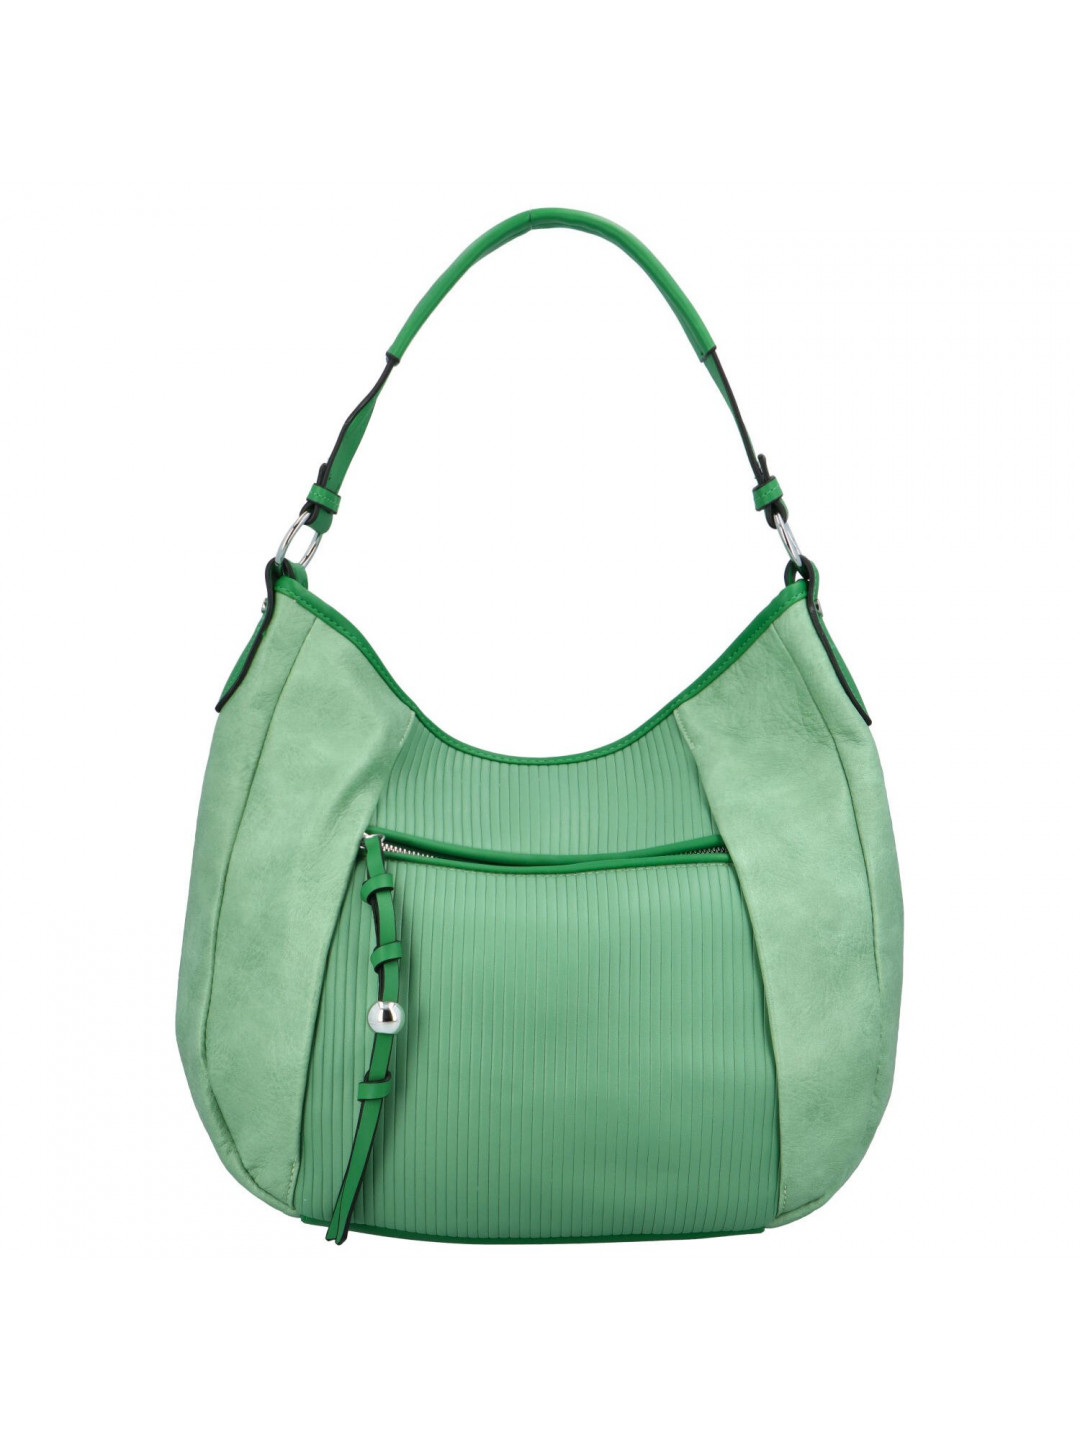 Dámská koženková kabelka s kapsou na přední straně Anna zelená